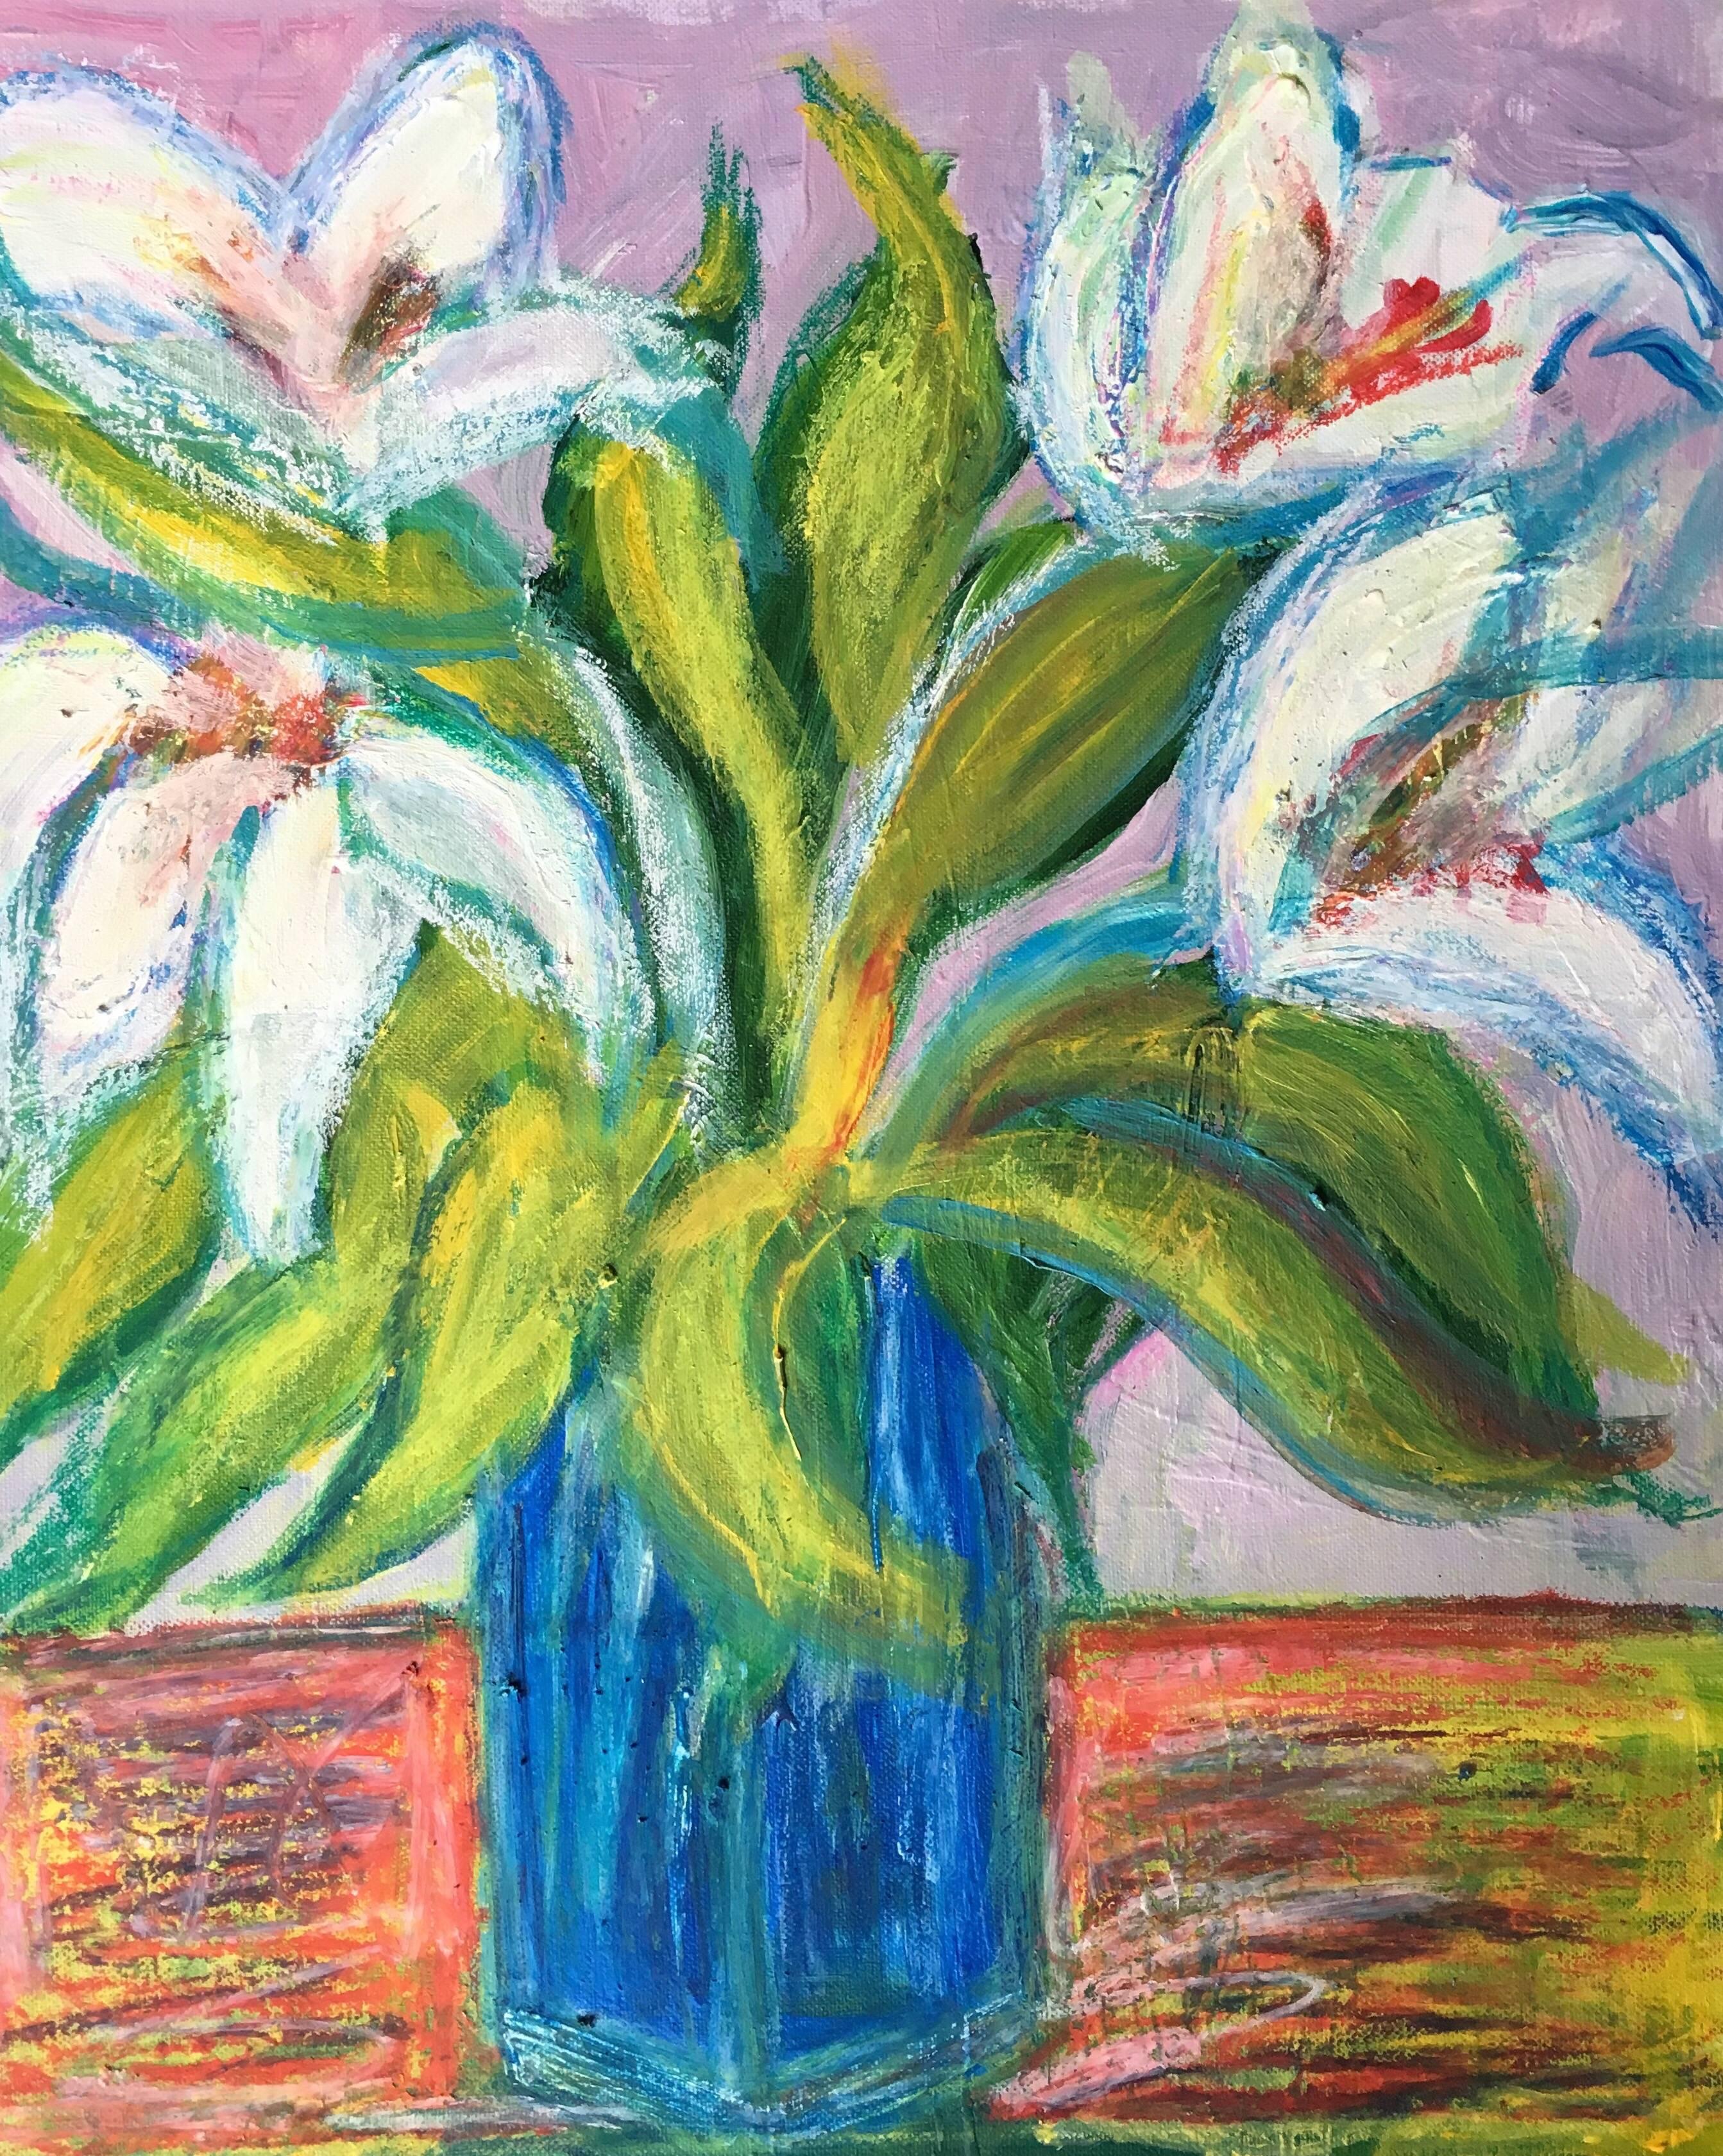 Pamela Cawley Landscape Painting – Lilien in einer blauen Vase, impressionistisches Ölgemälde von Blumen